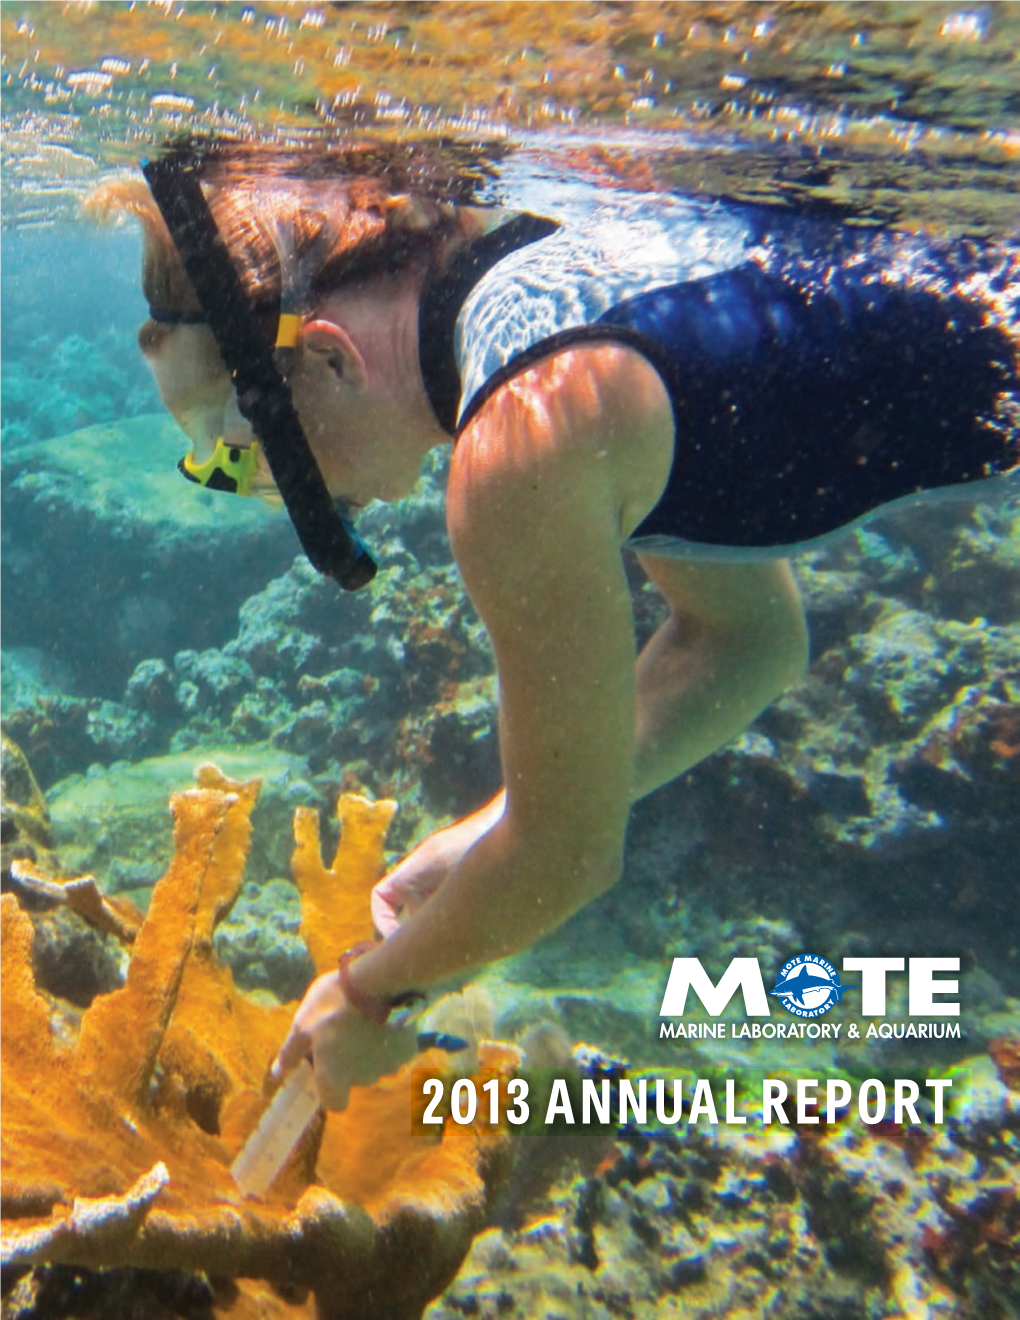 2013 Mote Marine Laboratory & Aquarium Annual Report